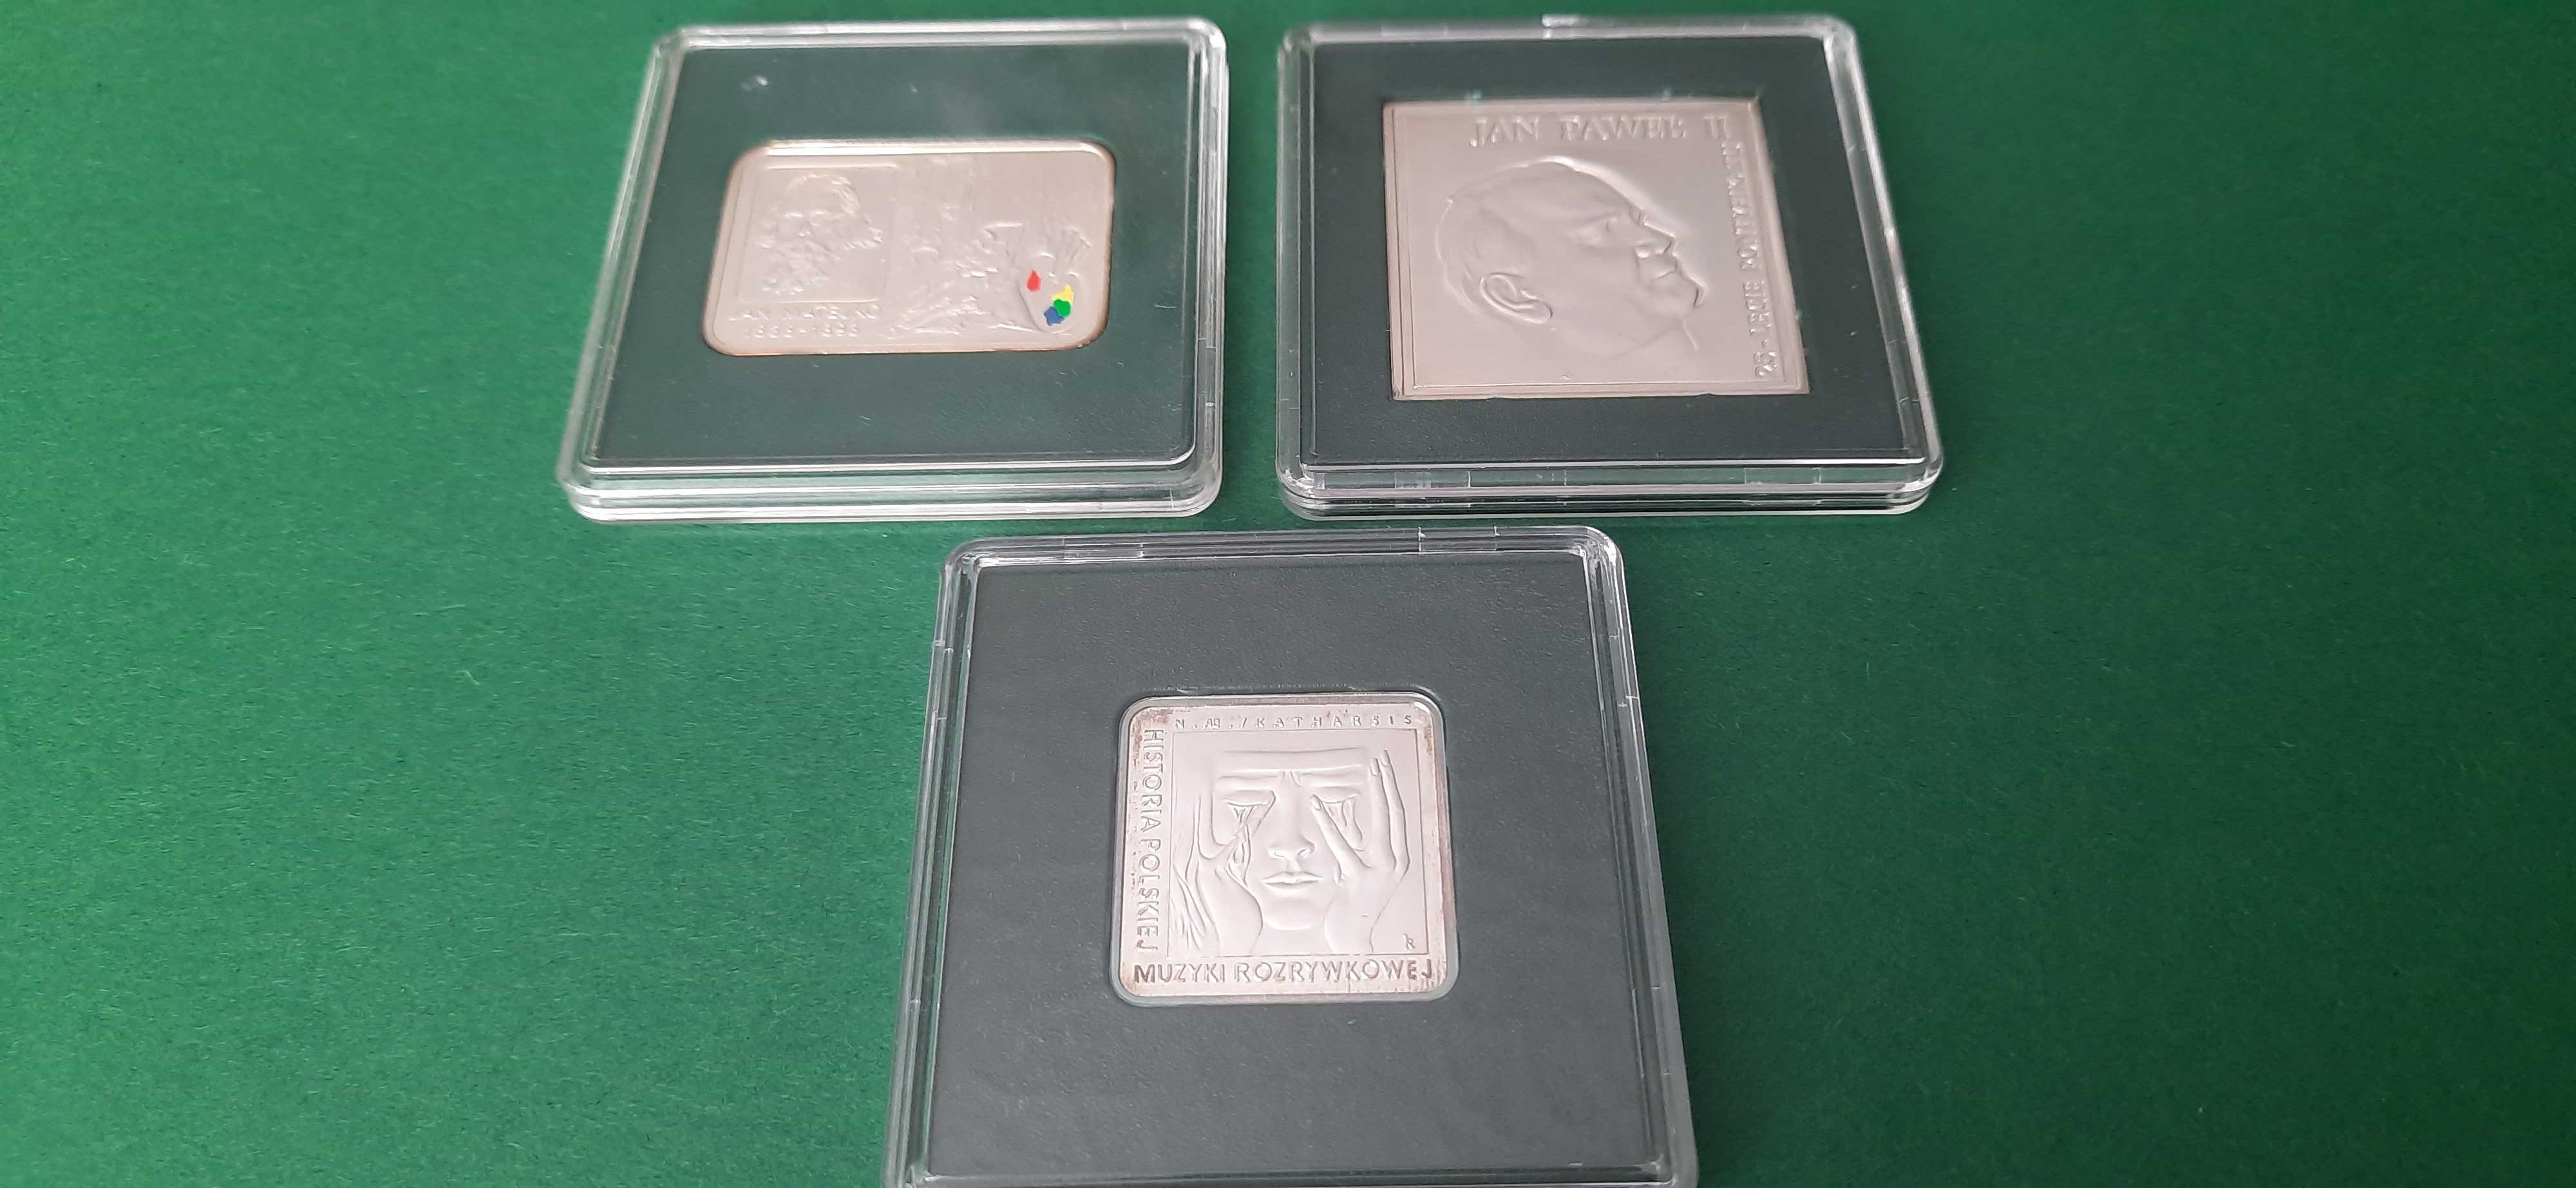 Ponad 450 gramów srebra próby 925, 18 monet 10zł i 7 monet 20zł.